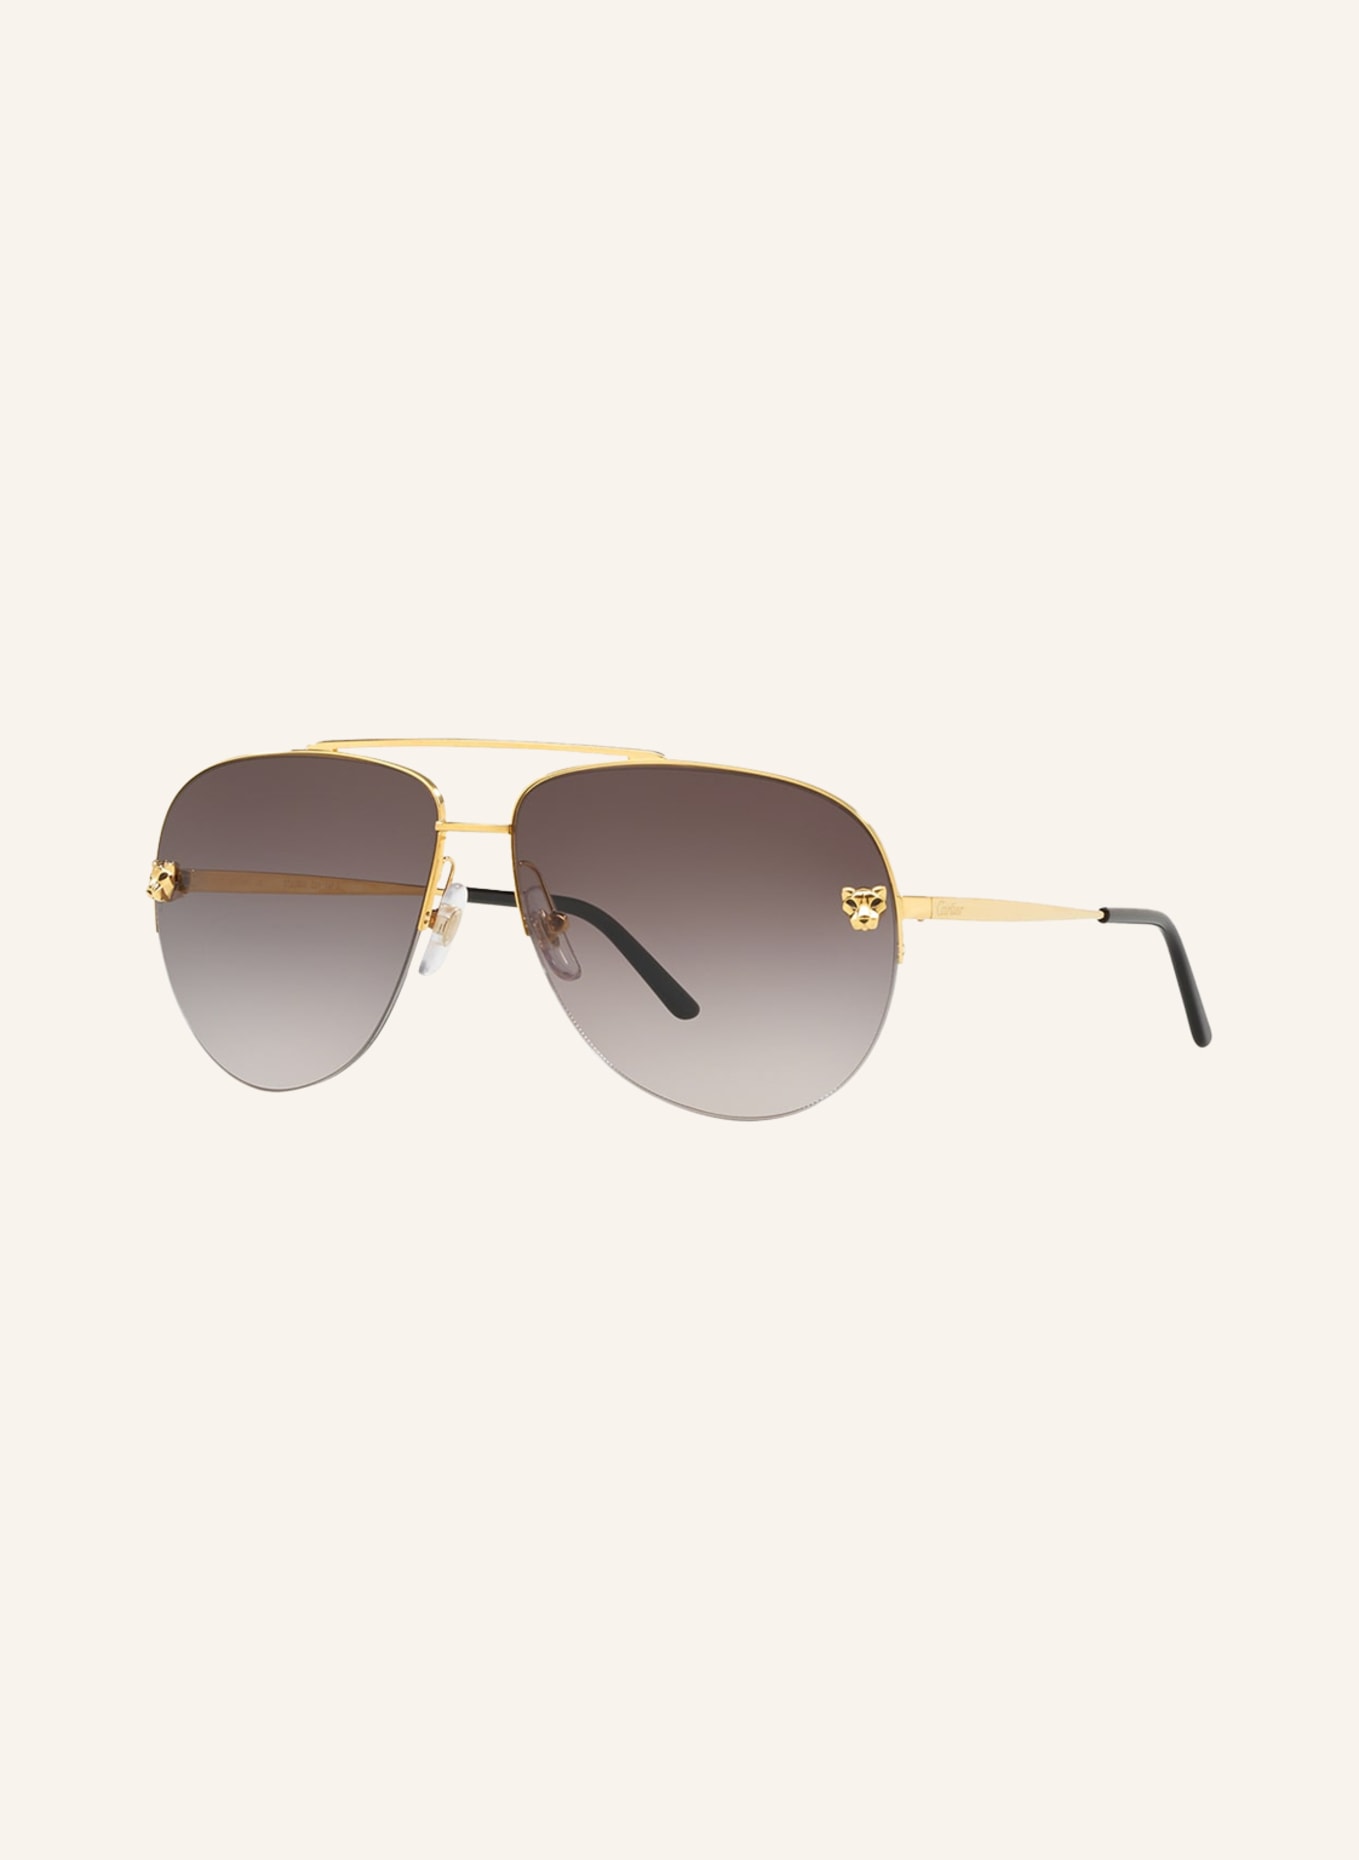 Cartier Sunglasses CT0065S, Color: 2390L3 - GOLD/BROWN GRADIENT (Image 1)